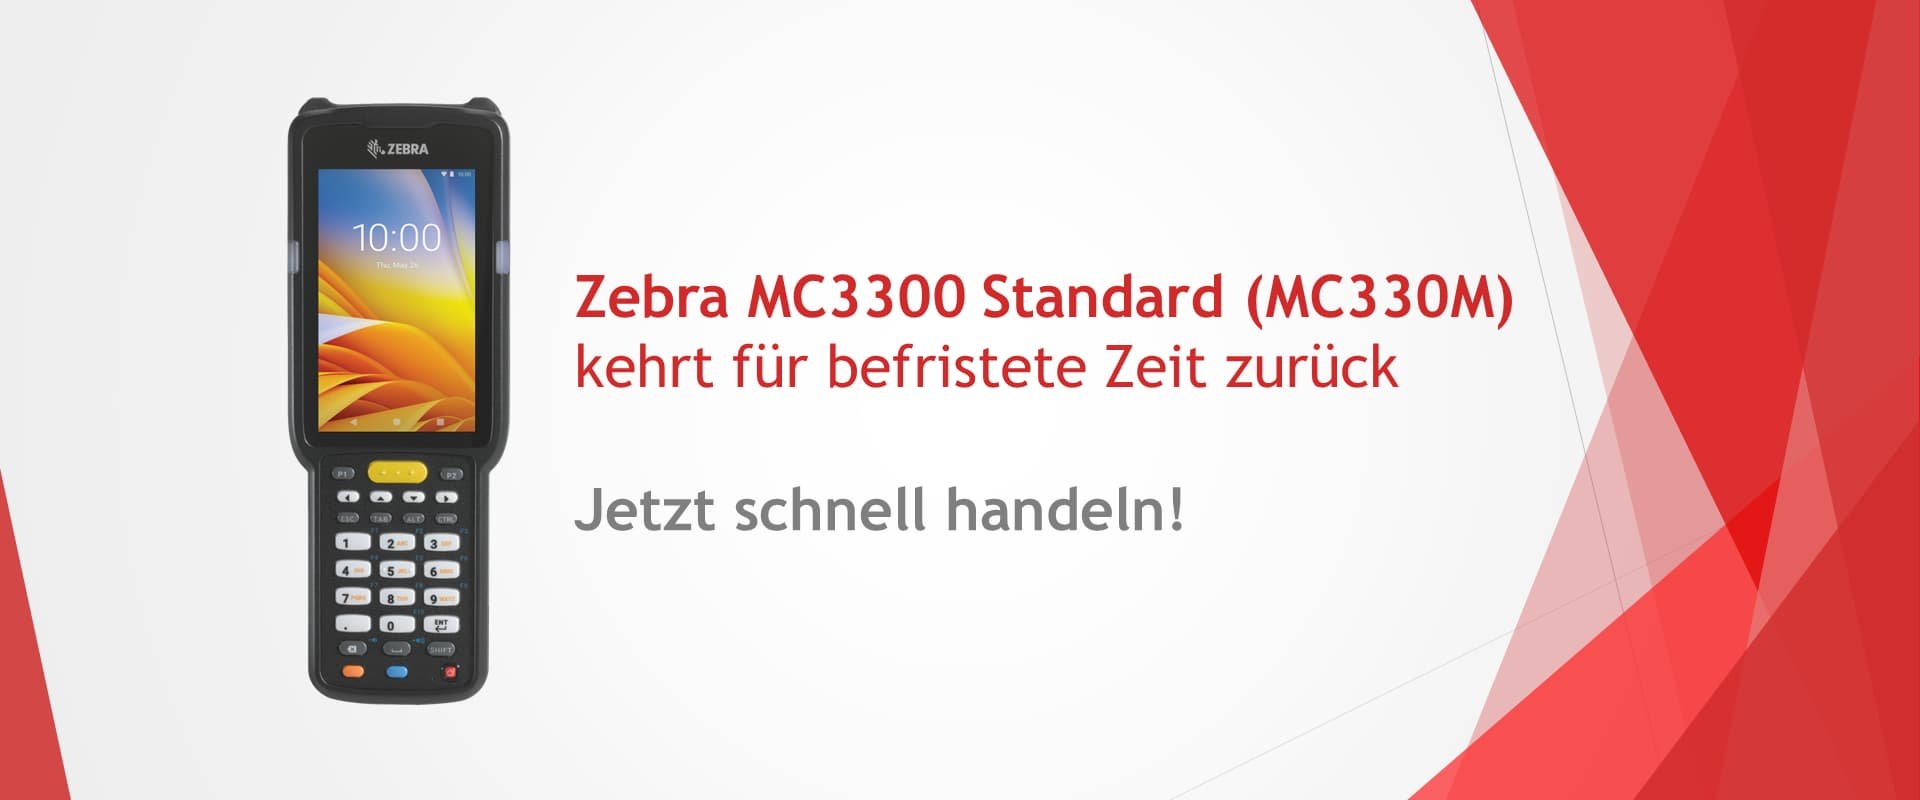 Zebra MC3300 Standard in limitierter Stückzahl erhältlich